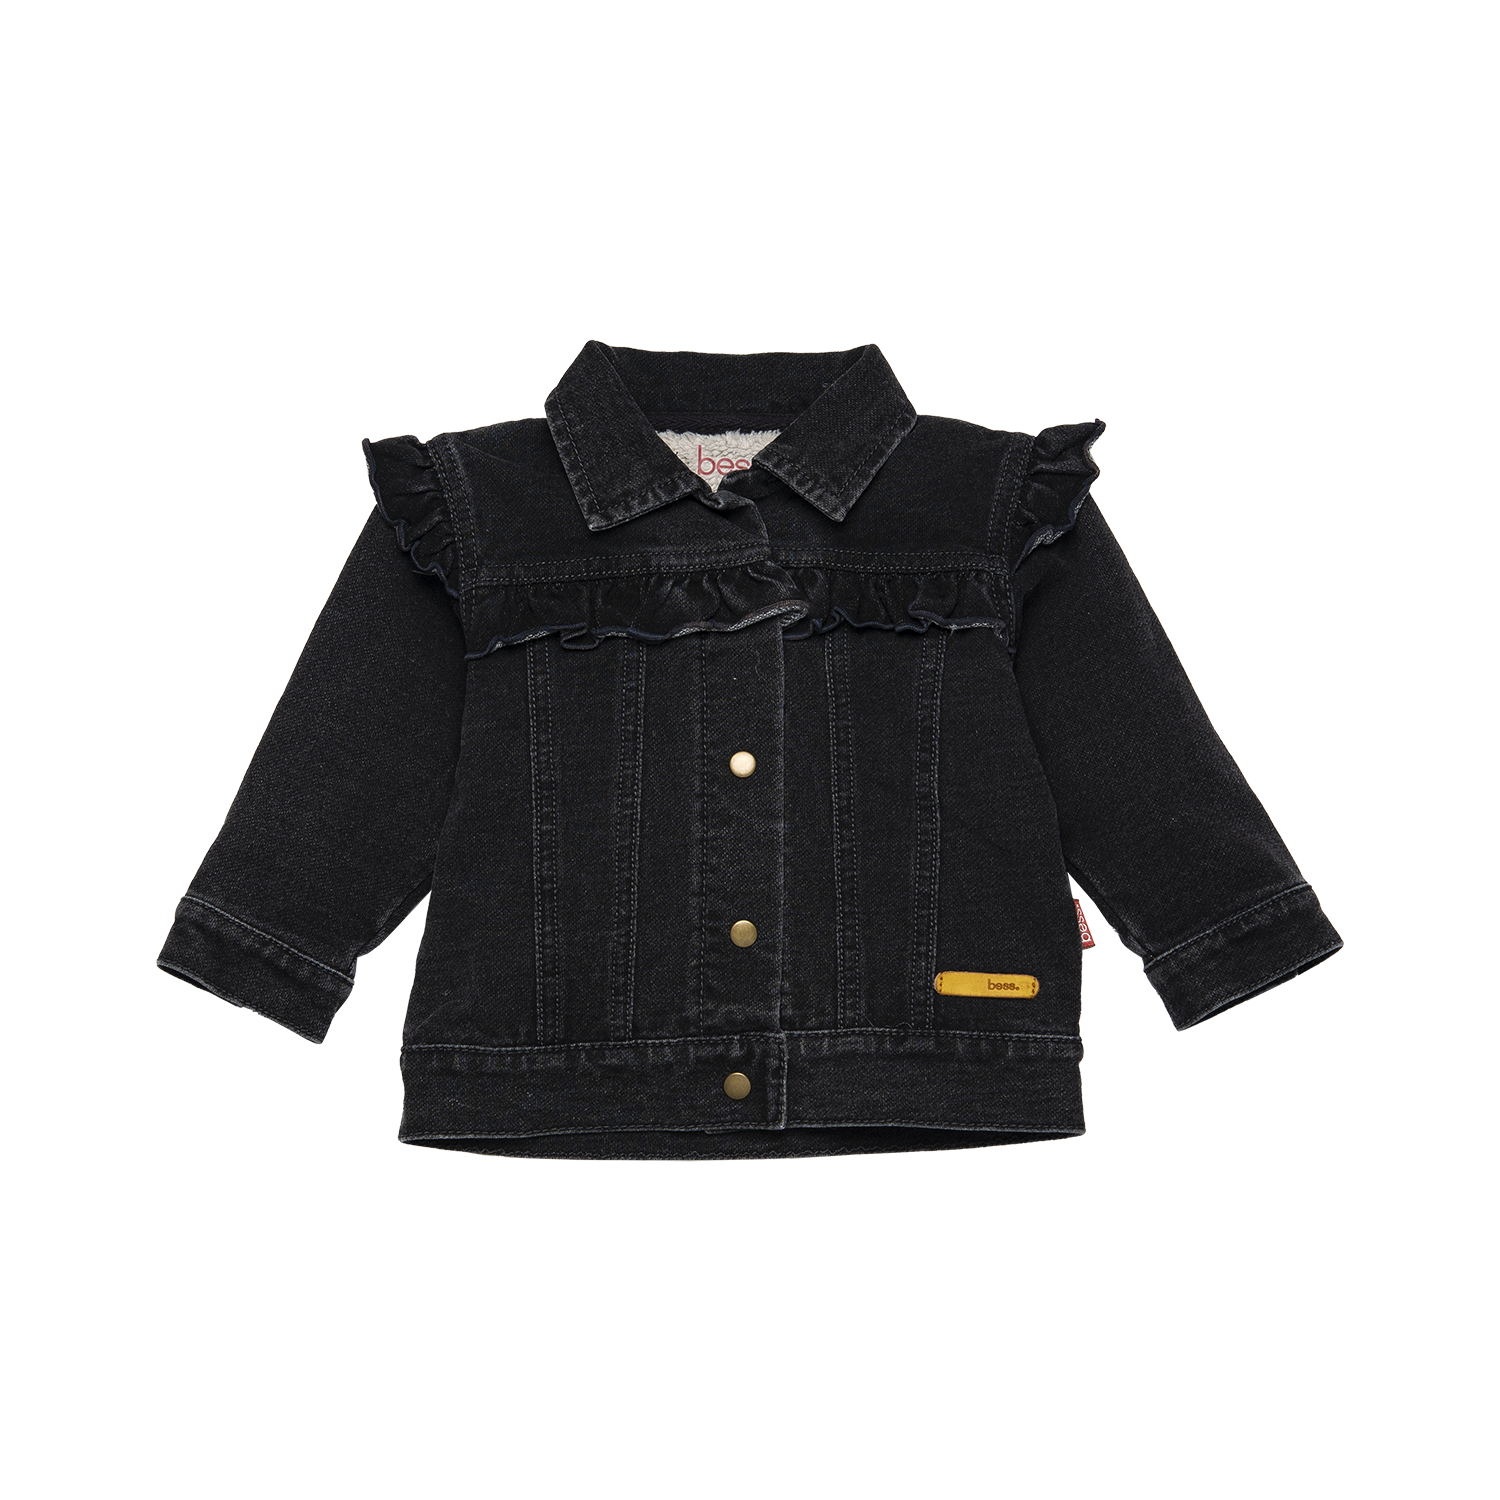 Meisjes Jacket Denim/Teddy Ruffles van B.E.S.S. in de kleur Black Denim in maat 68.